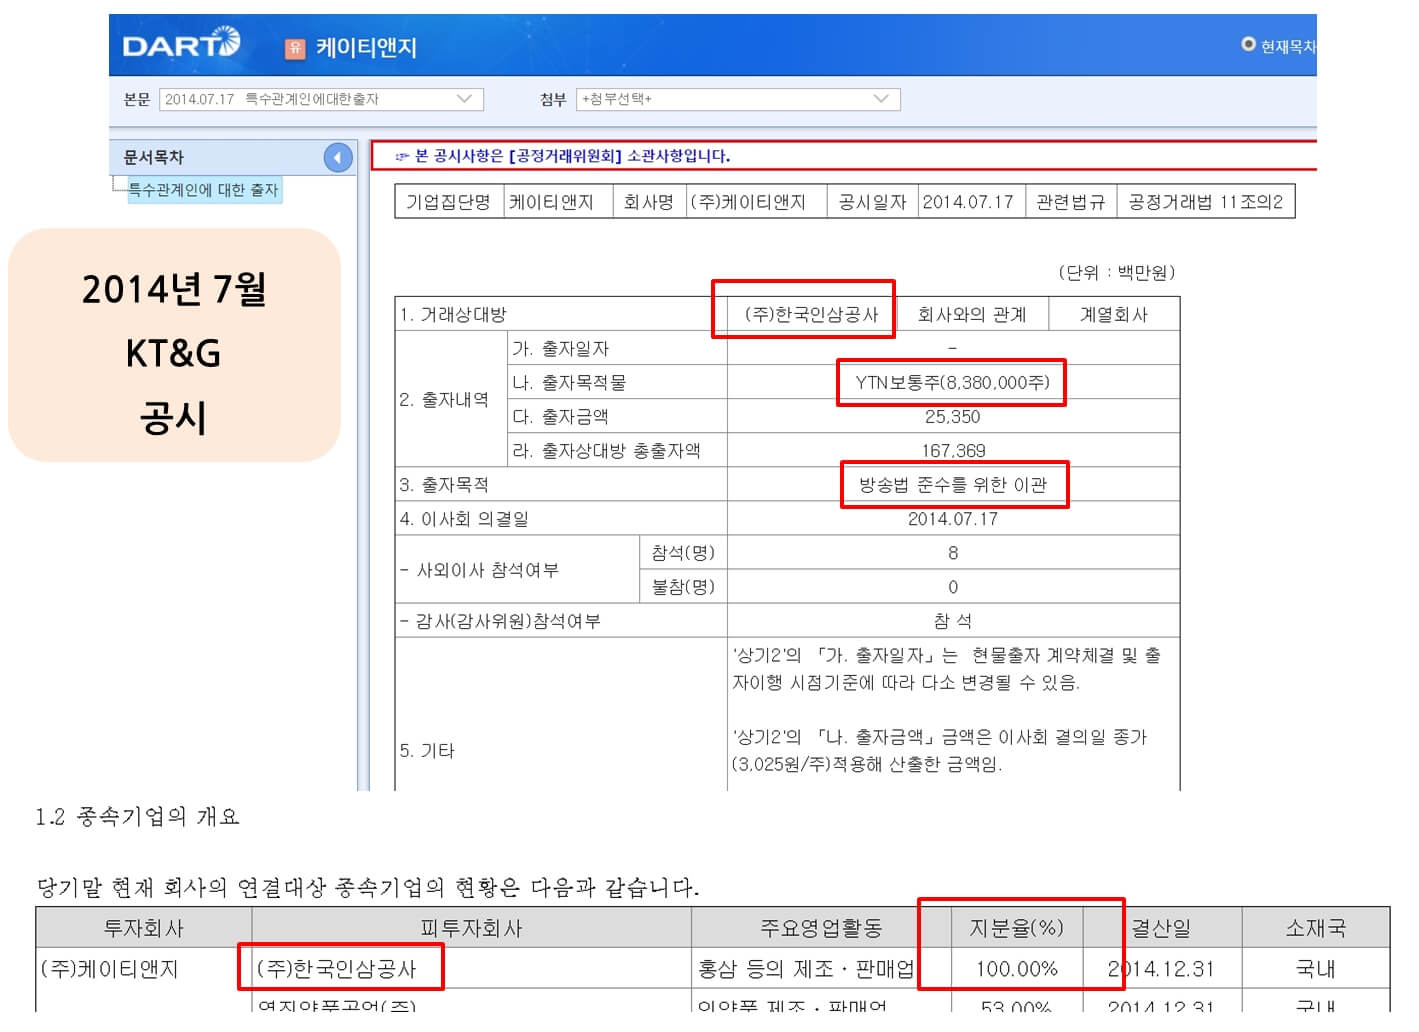 2014년 7월 KT&G 공시 내역으로 YTN 지분을 자회사인 한국인삼공사에 이관한다는 내용